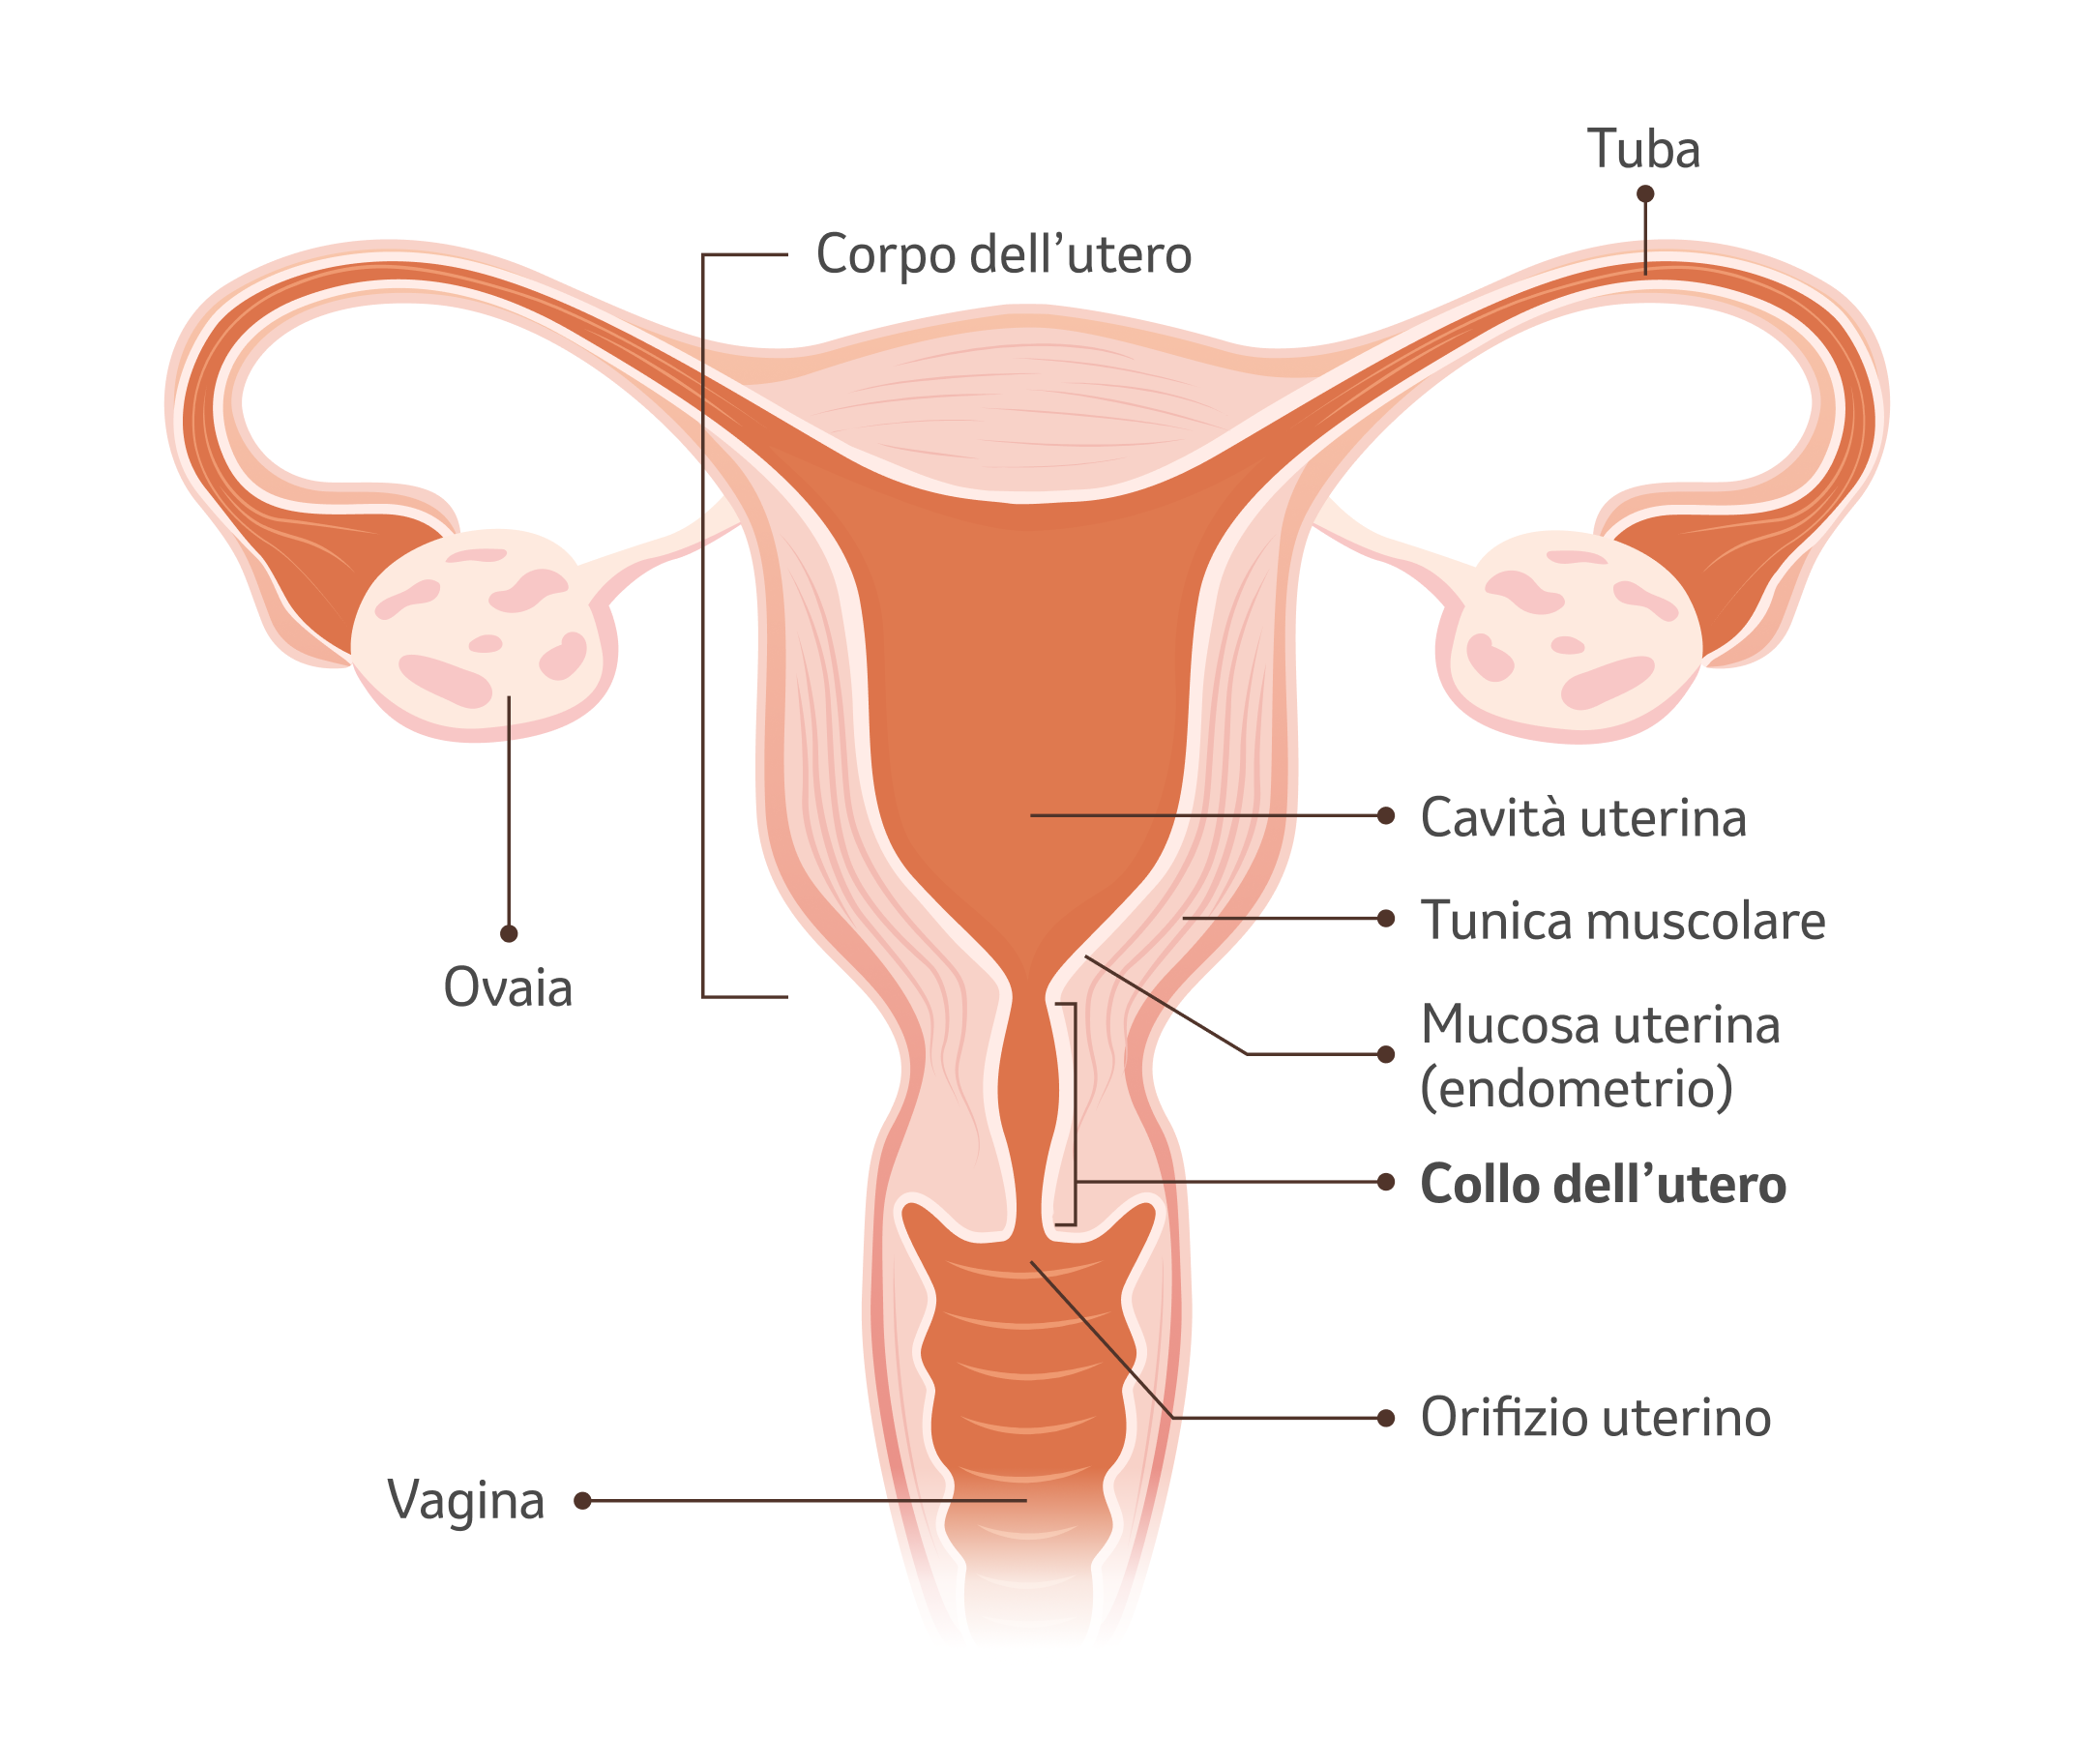 Illustrazione dell'utero con spiegazione